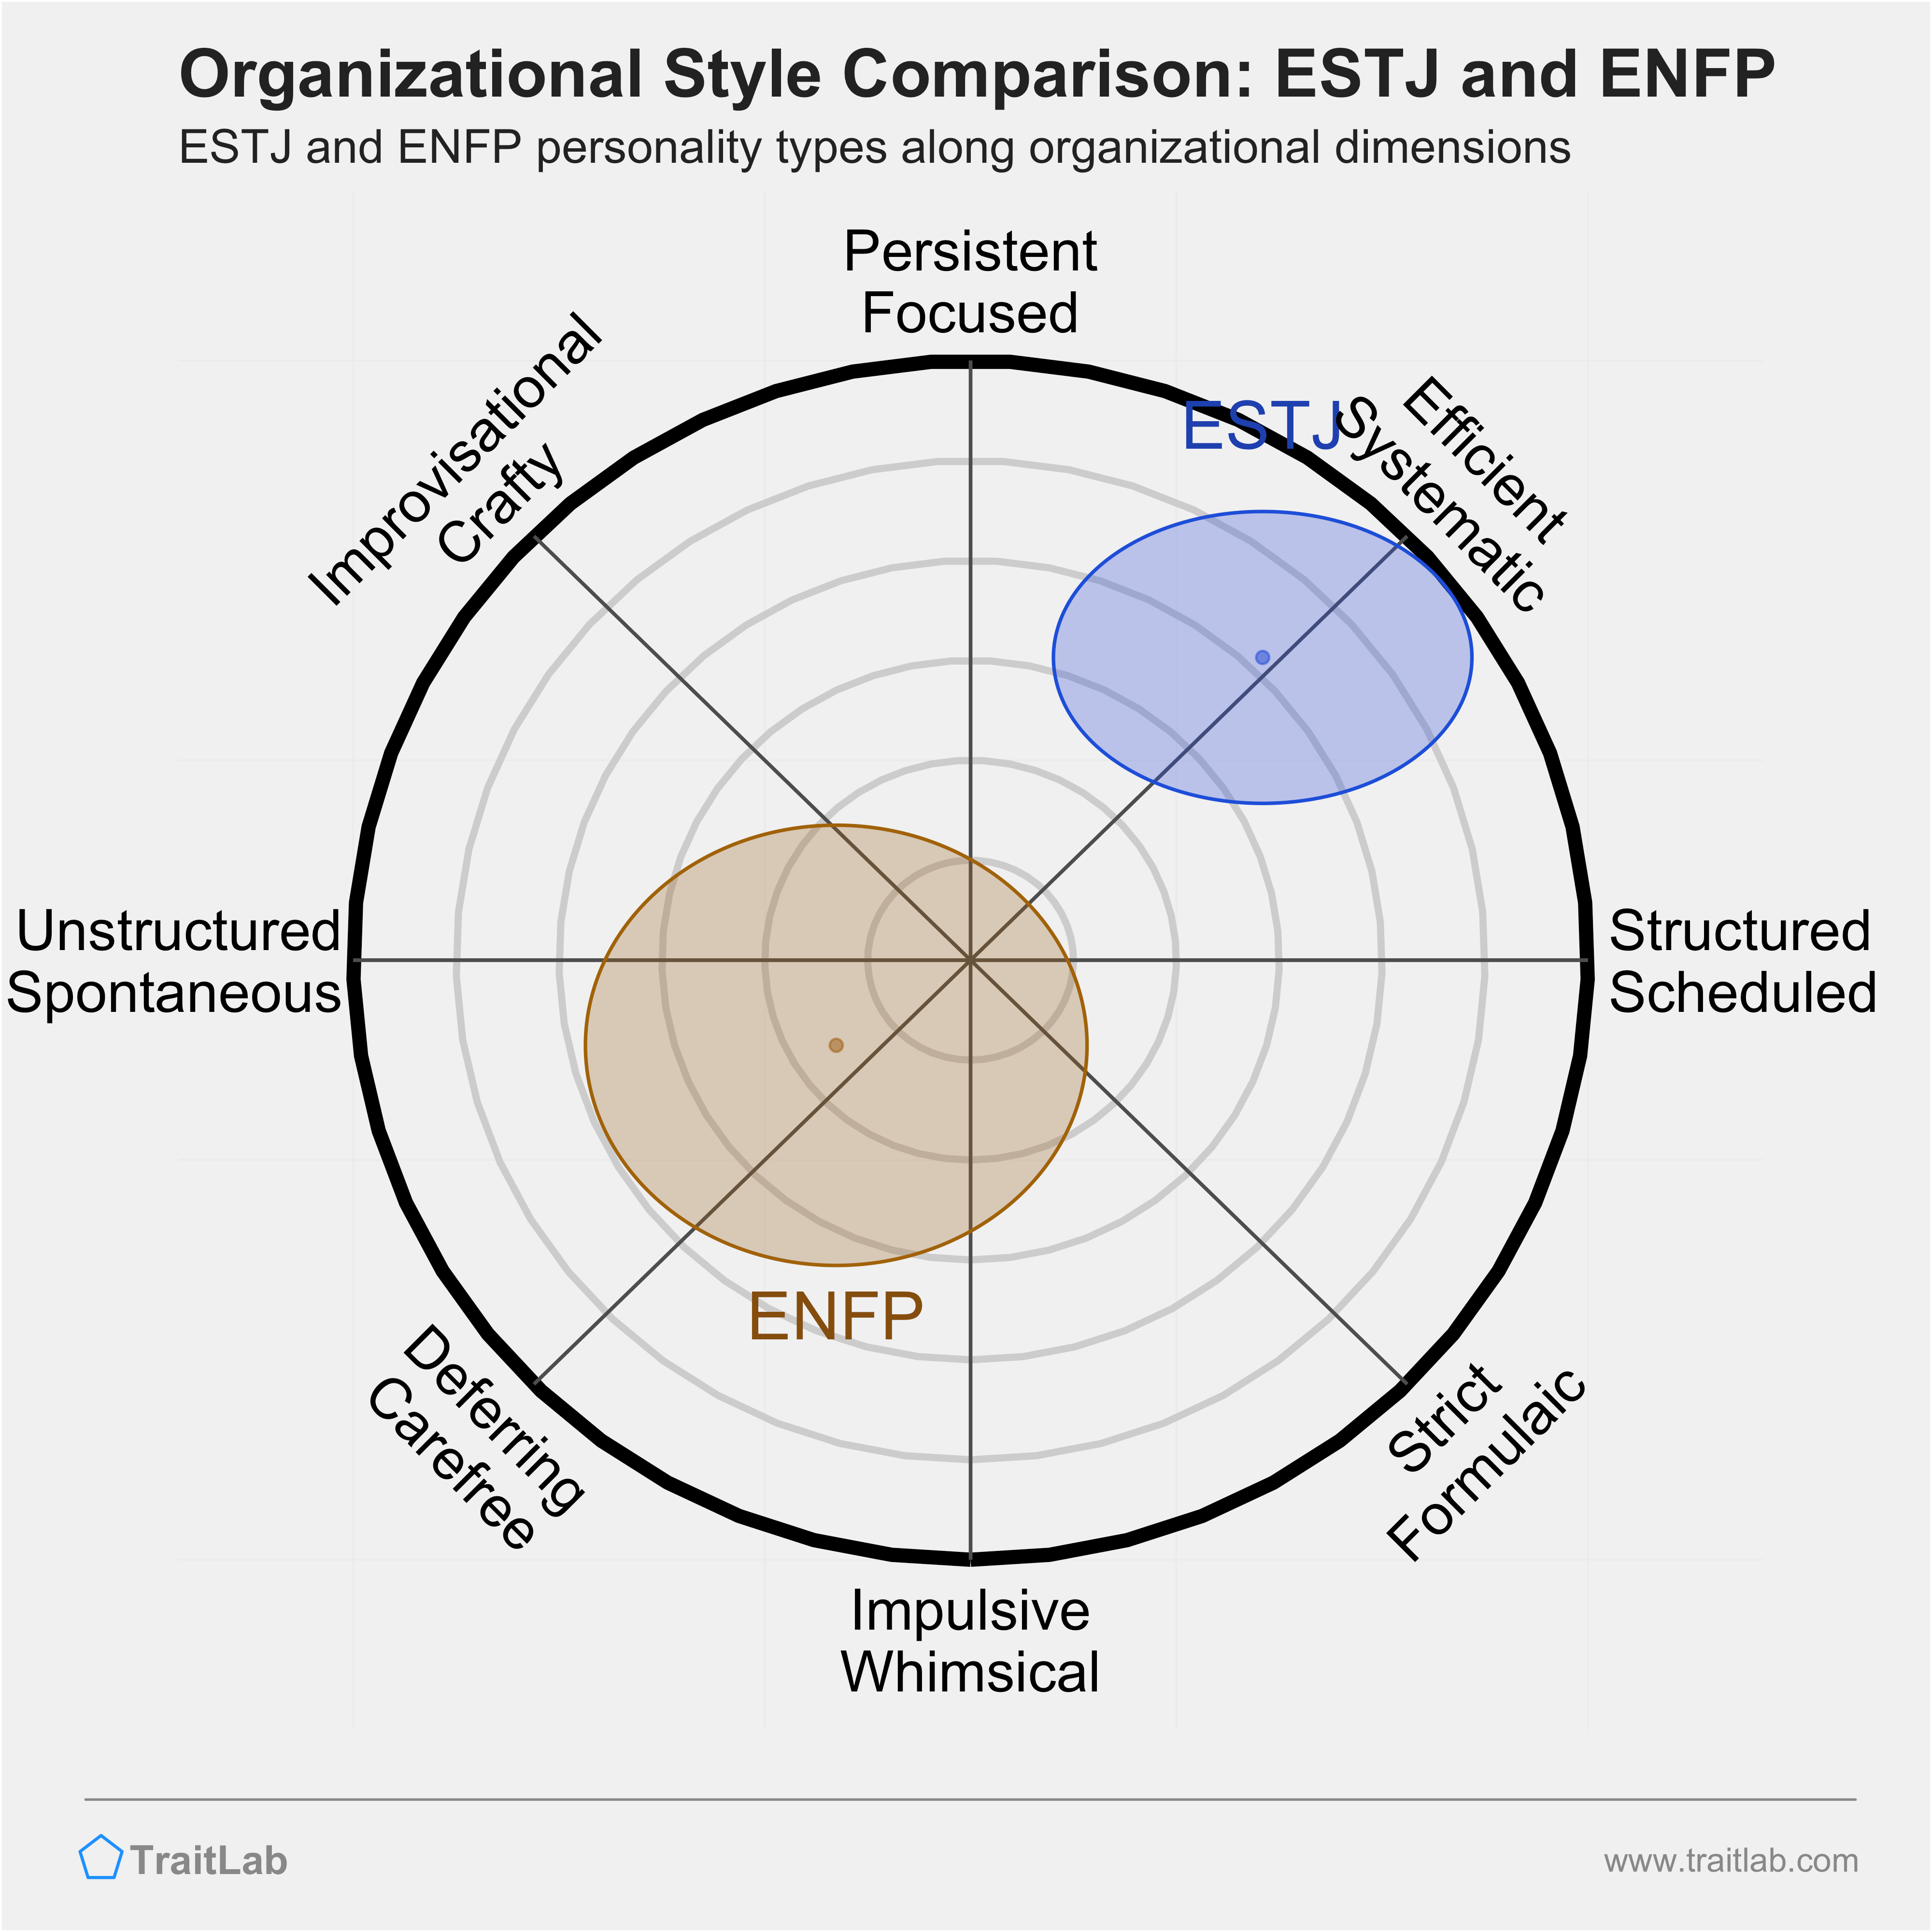 ESTJ and ENFP comparison across organizational dimensions